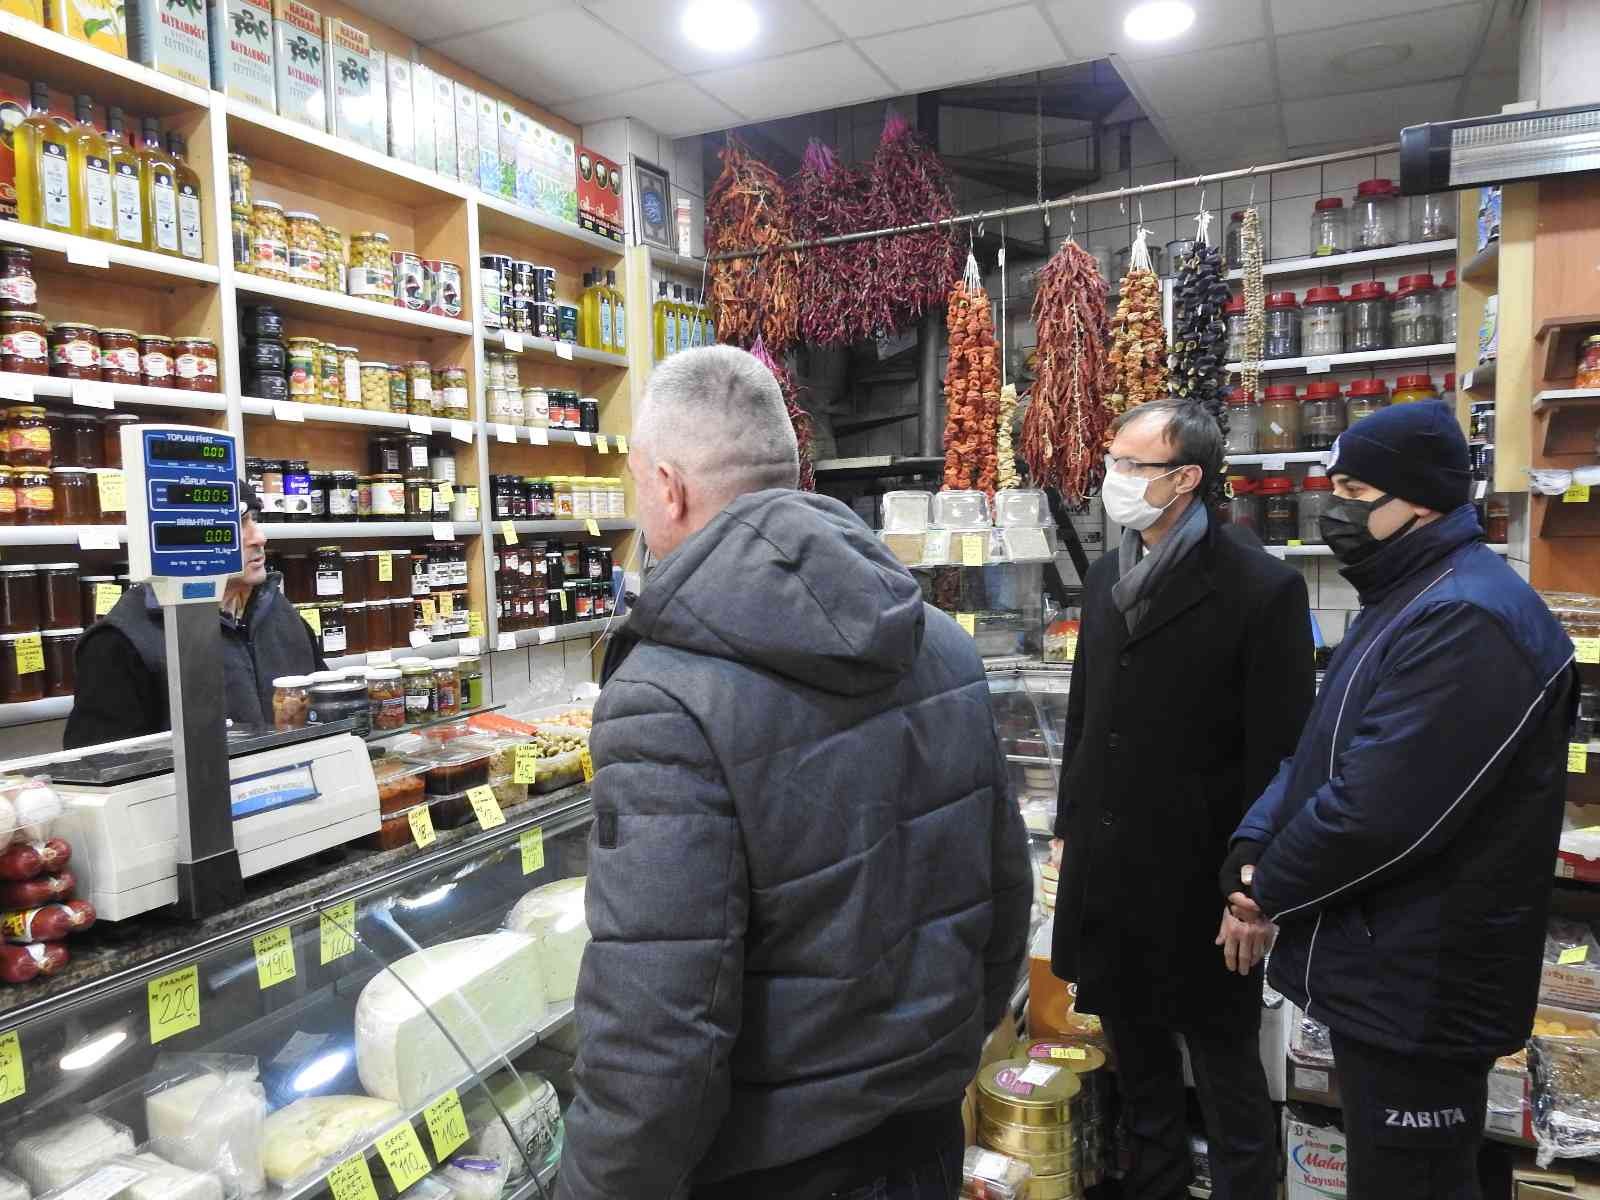 Edirne’de fiyat tarife ve etiket denetimleri arttı #edirne